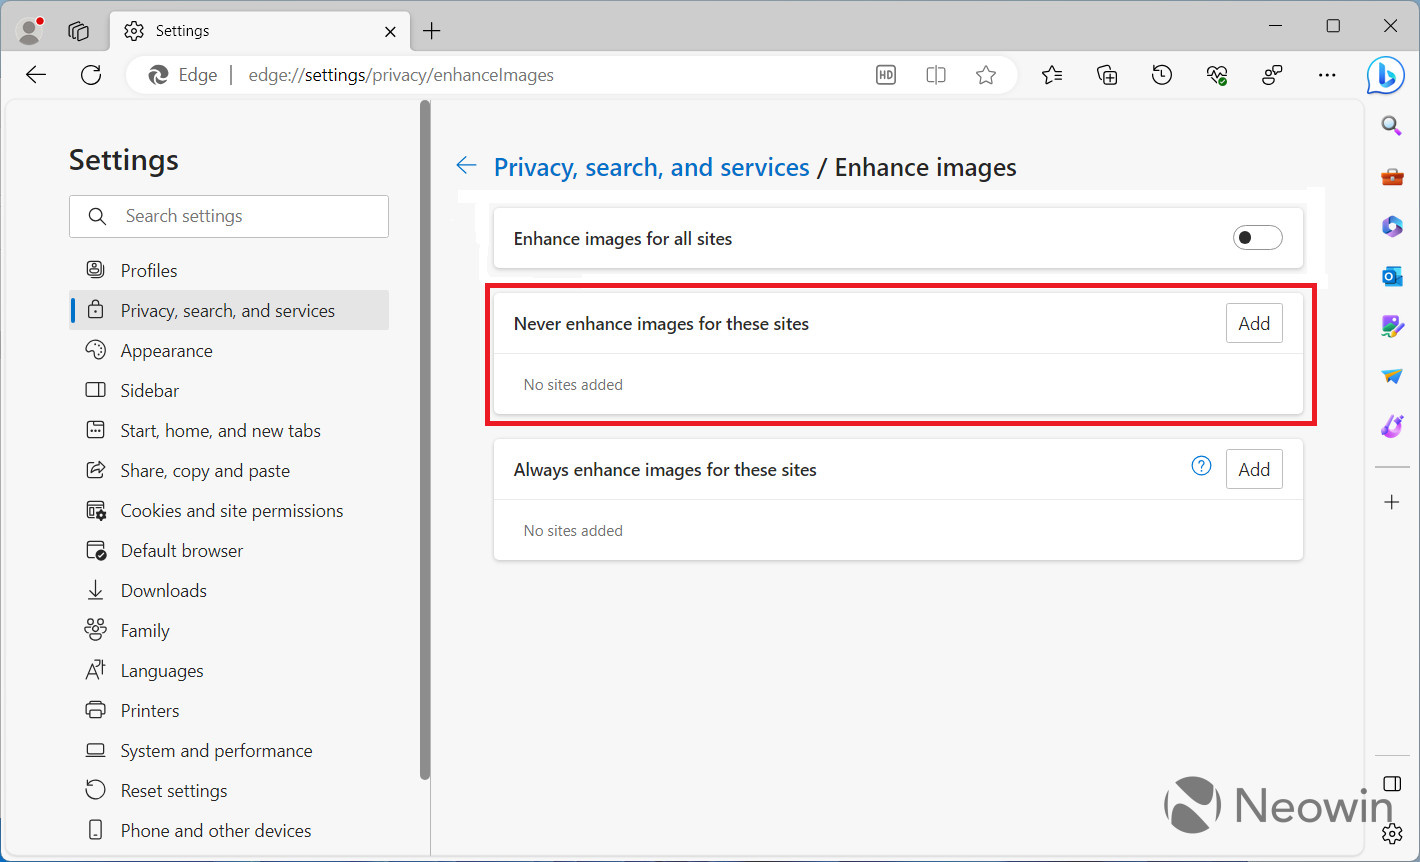 Edge 浏览器中的“增强图片”功能会将图片 URL 发送给微软，且默认开启